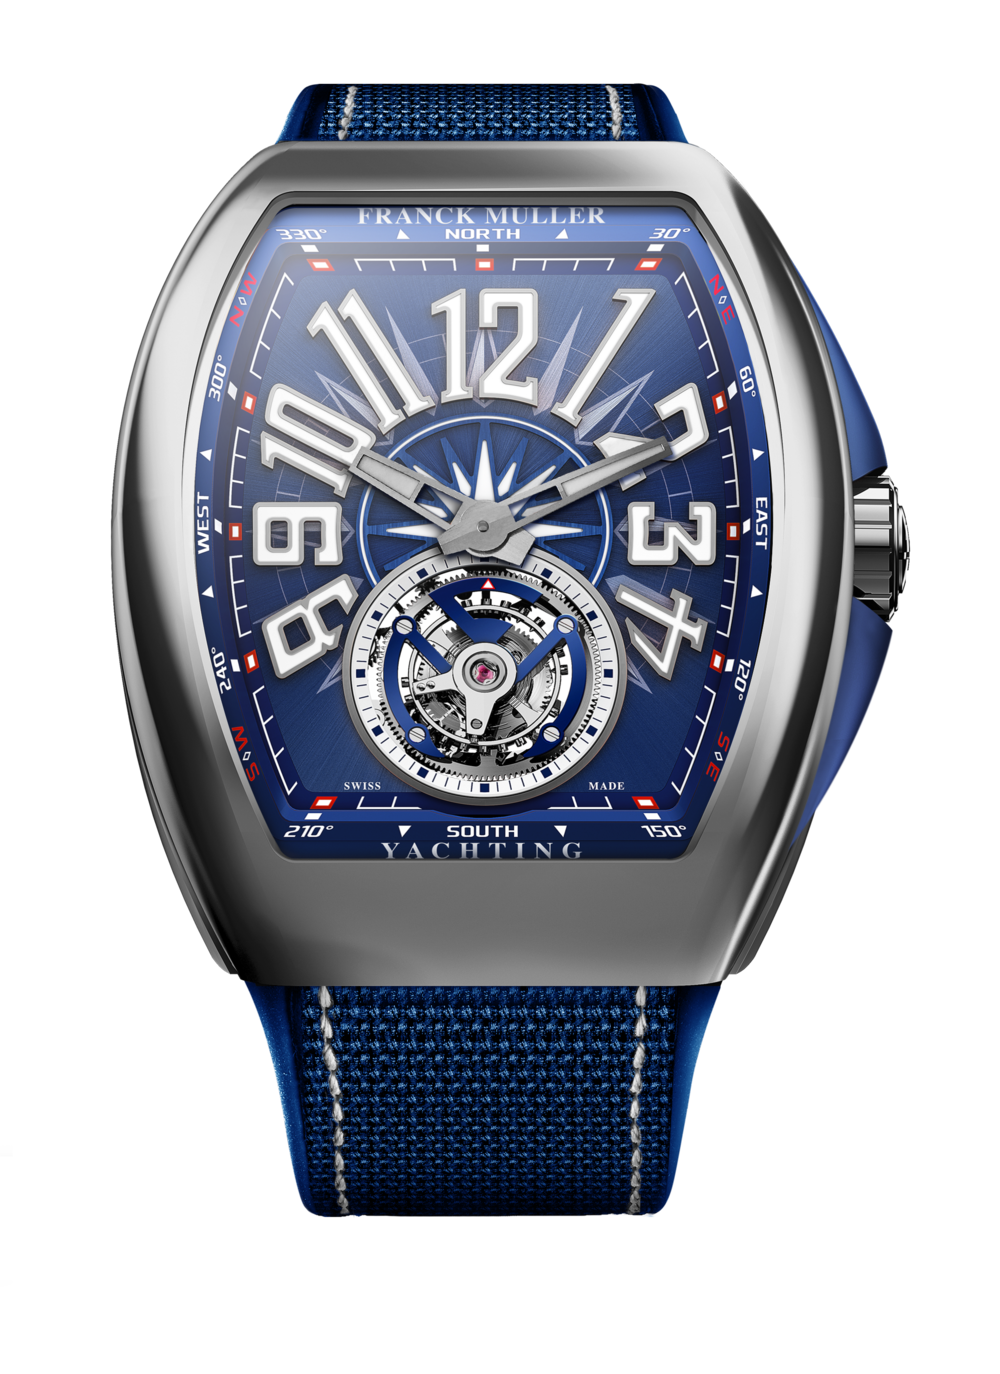 Franck Muller Franck Muller Vanguard V41SC DT 5N NR Black Dial New Watch Men's Watch